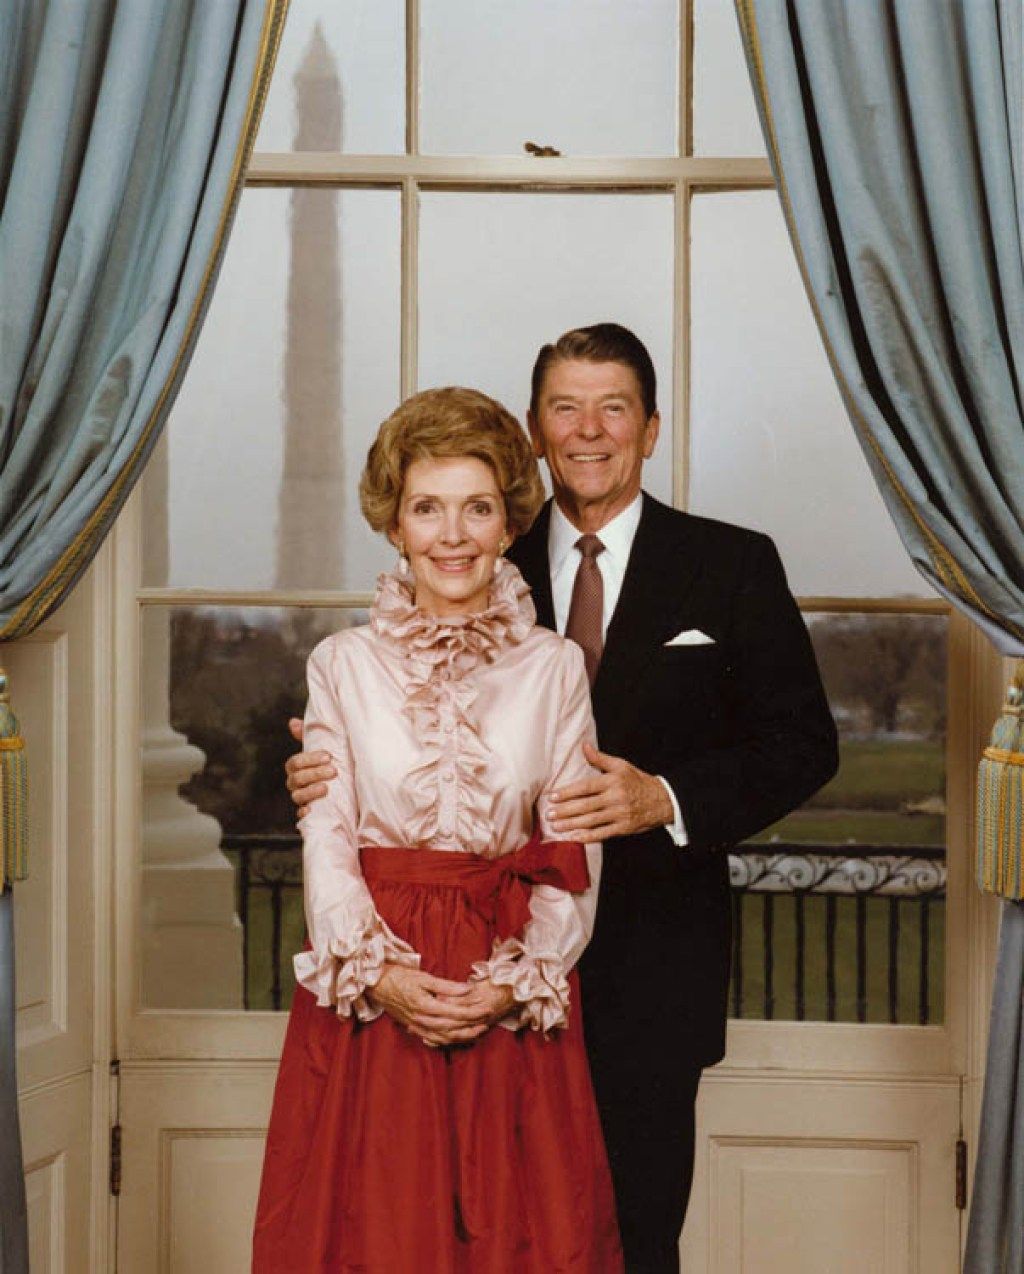 الرئيس ريغان والسيدة ريغان يقفان في الغرفة الزرقاء لصورتهما الرسمية ، نانسي ترتدي قميصًا مكشكشًا ، أزياء الثمانينيات